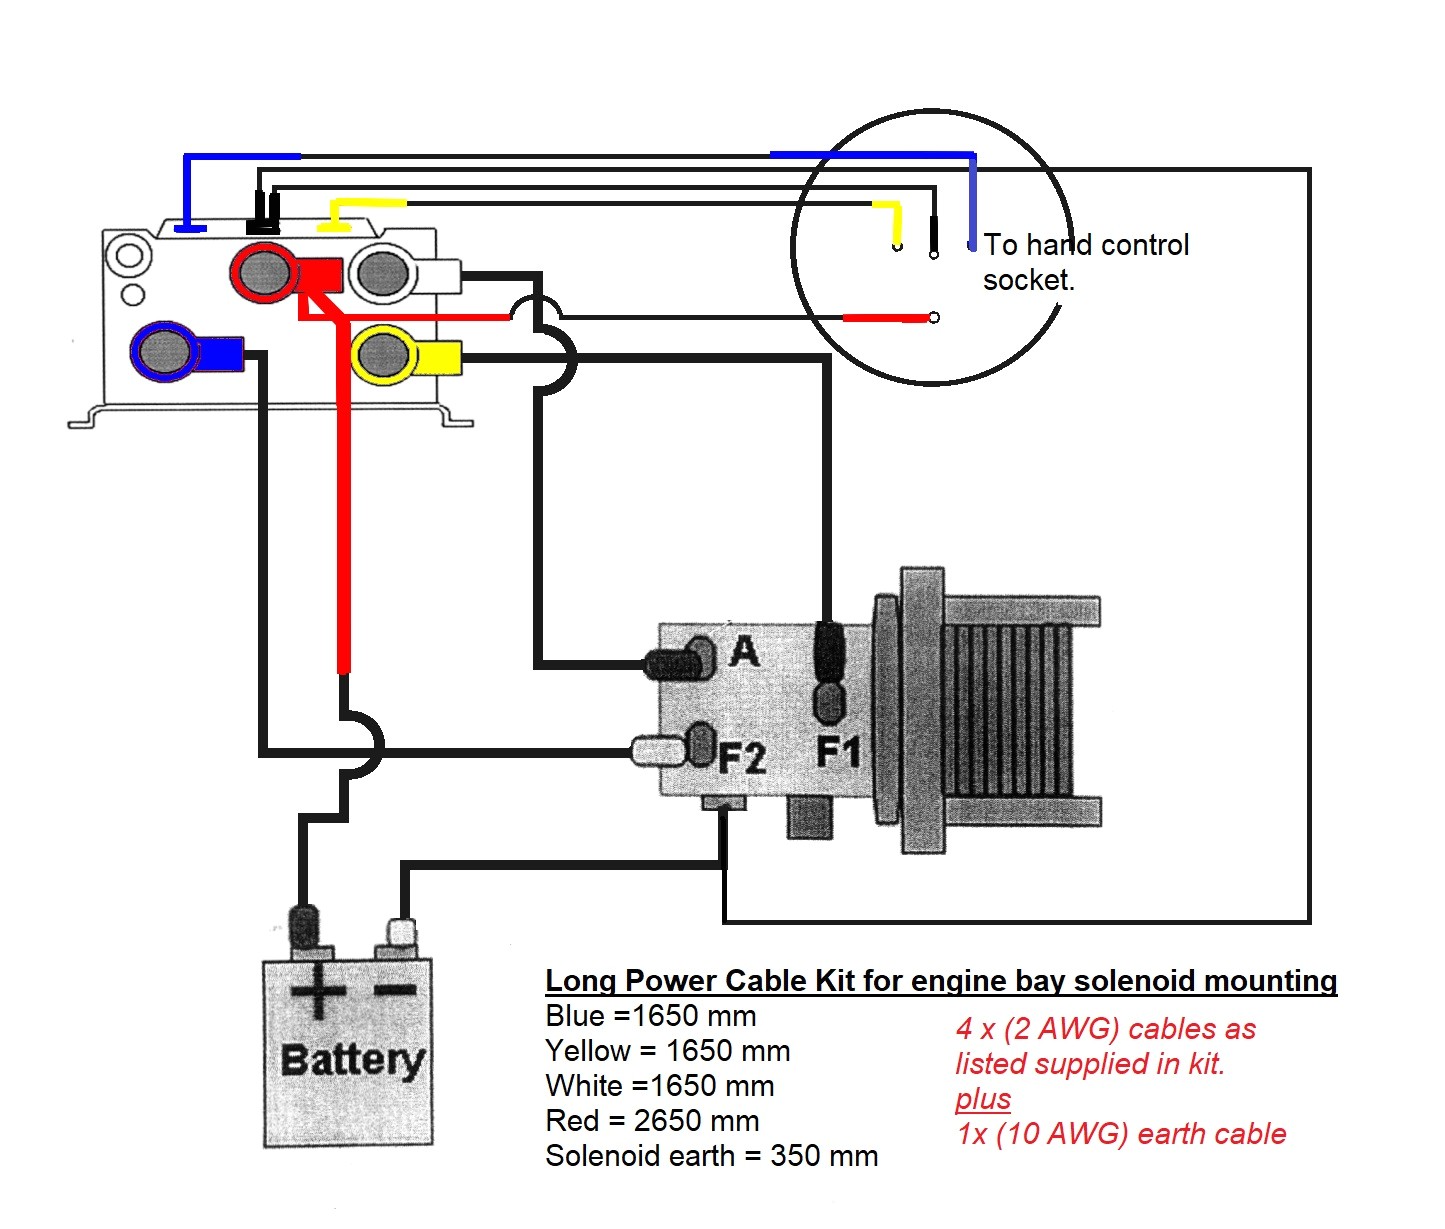 smittybilt xrc8 winch wiring diagram warn winch solenoid wiring diagram atv wiring diagram today of smittybilt xrc8 winch wiring diagram 4